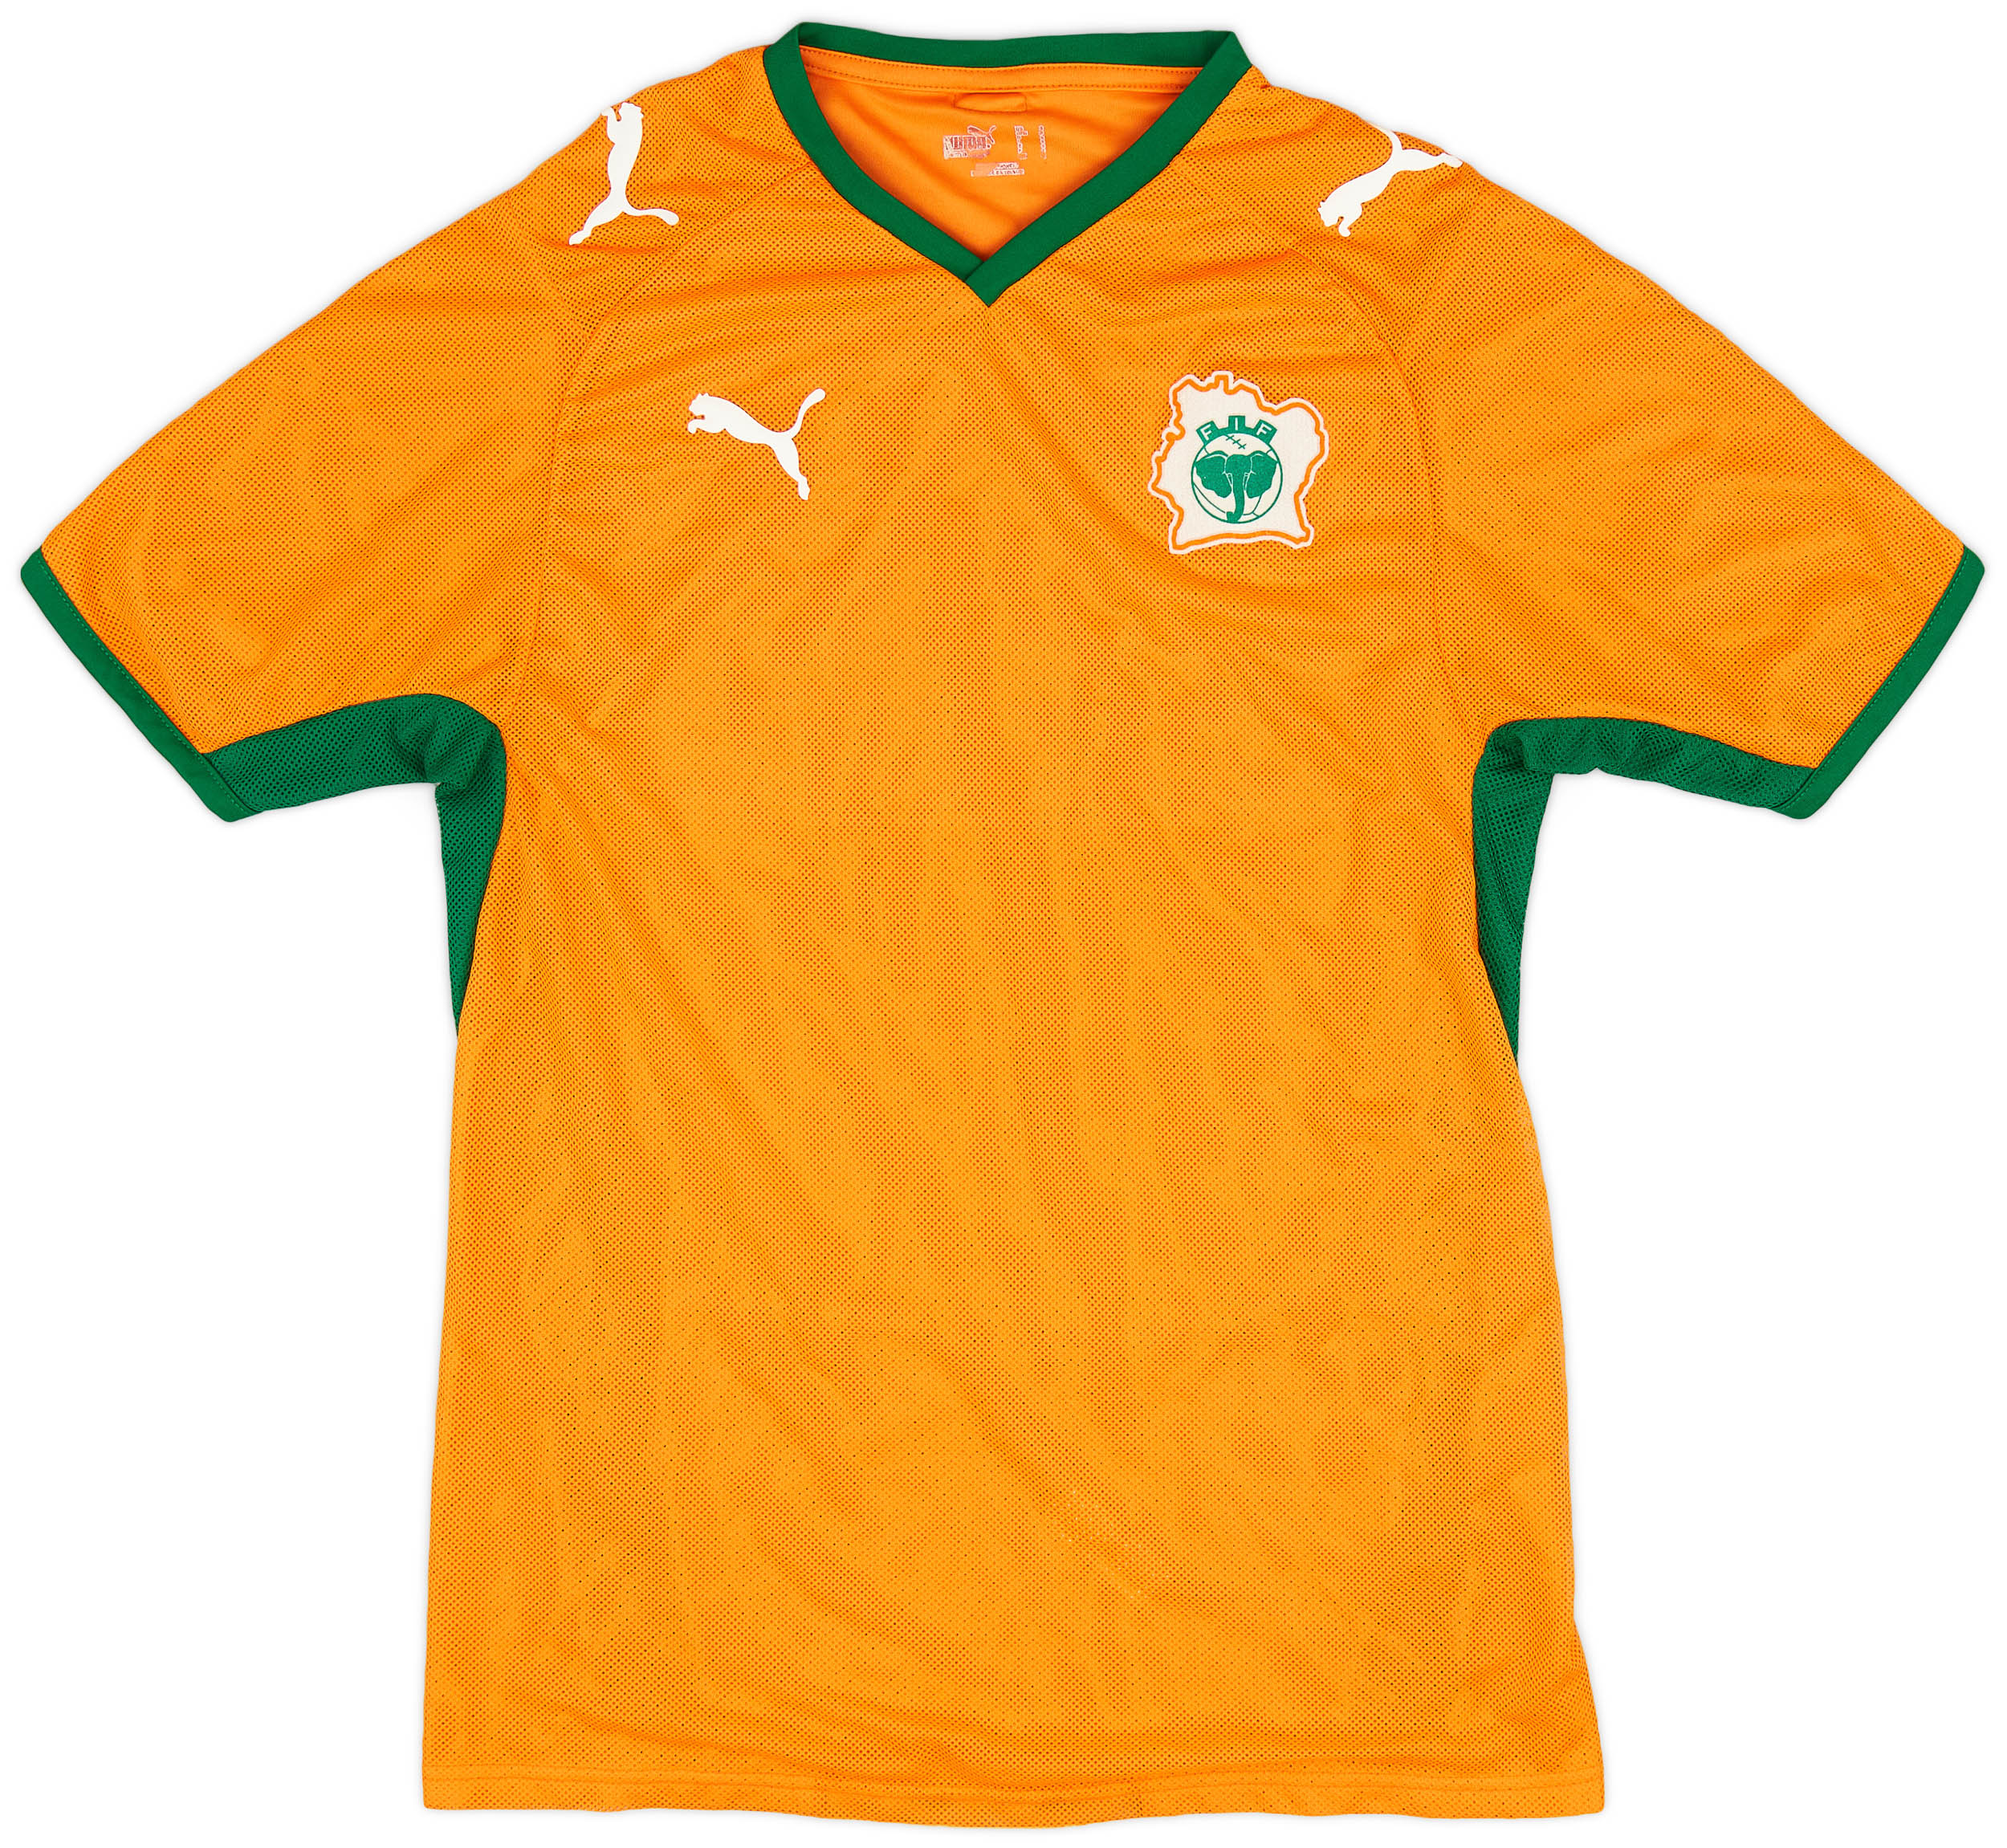 Côte d'Ivoire  home футболка (Original)